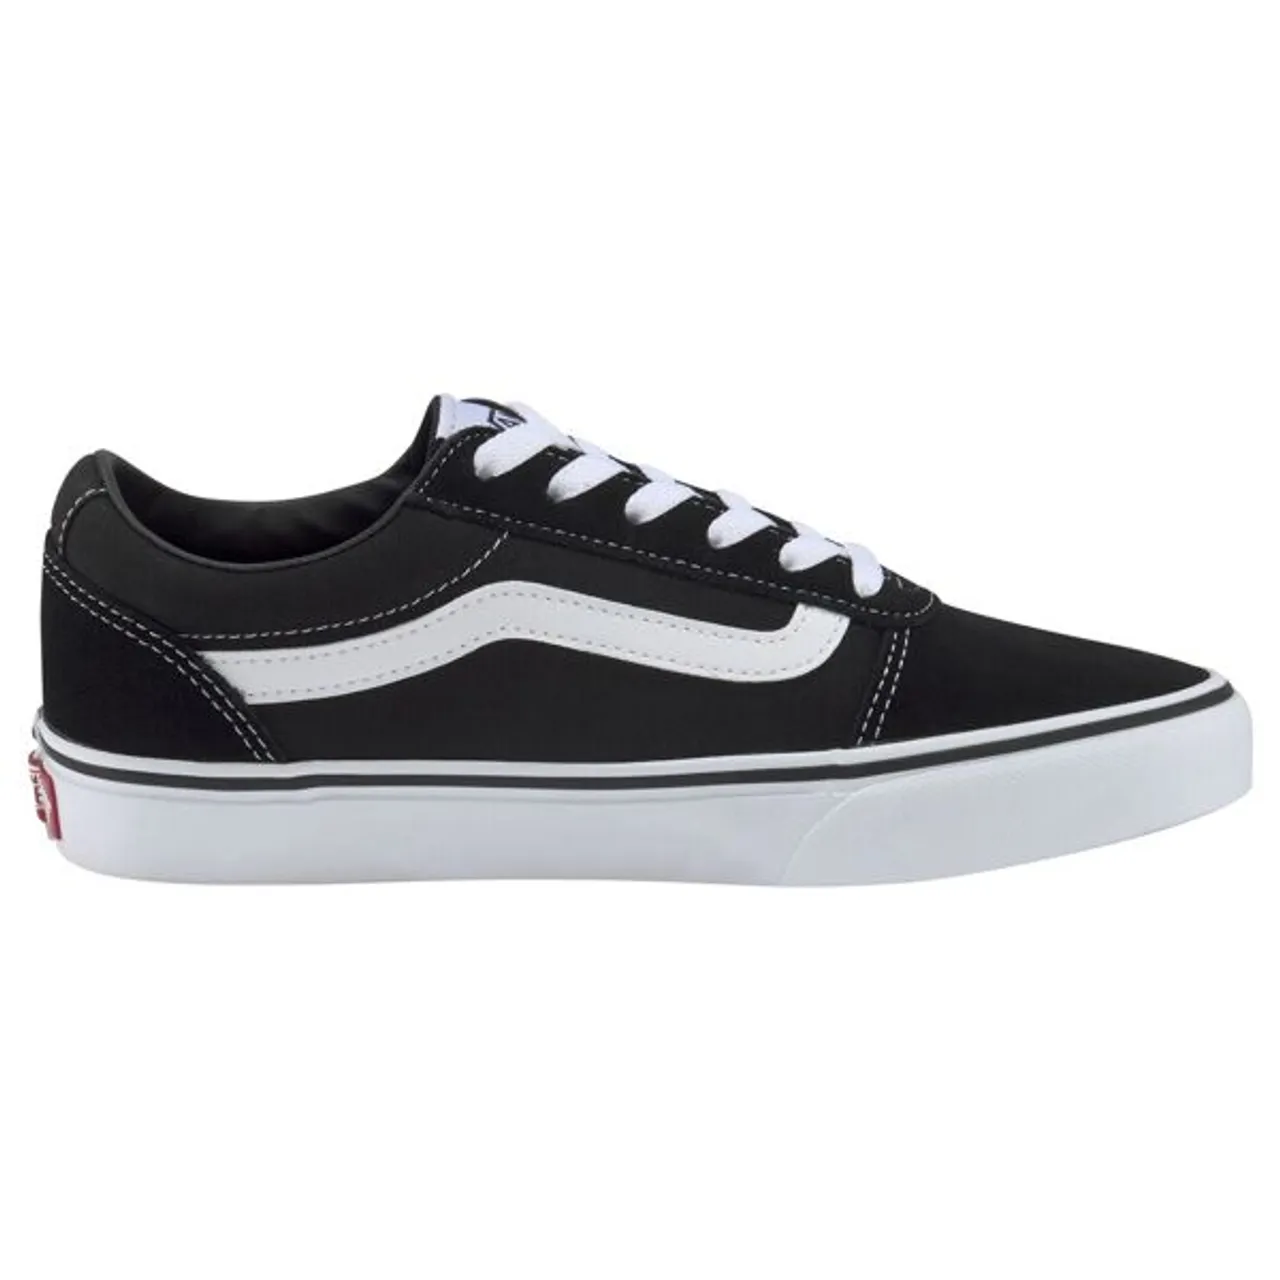 Sneaker VANS "Ward" Gr. 36,5, schwarz-weiß (schwarz, weiß) Schuhe Skaterschuh Sneaker low